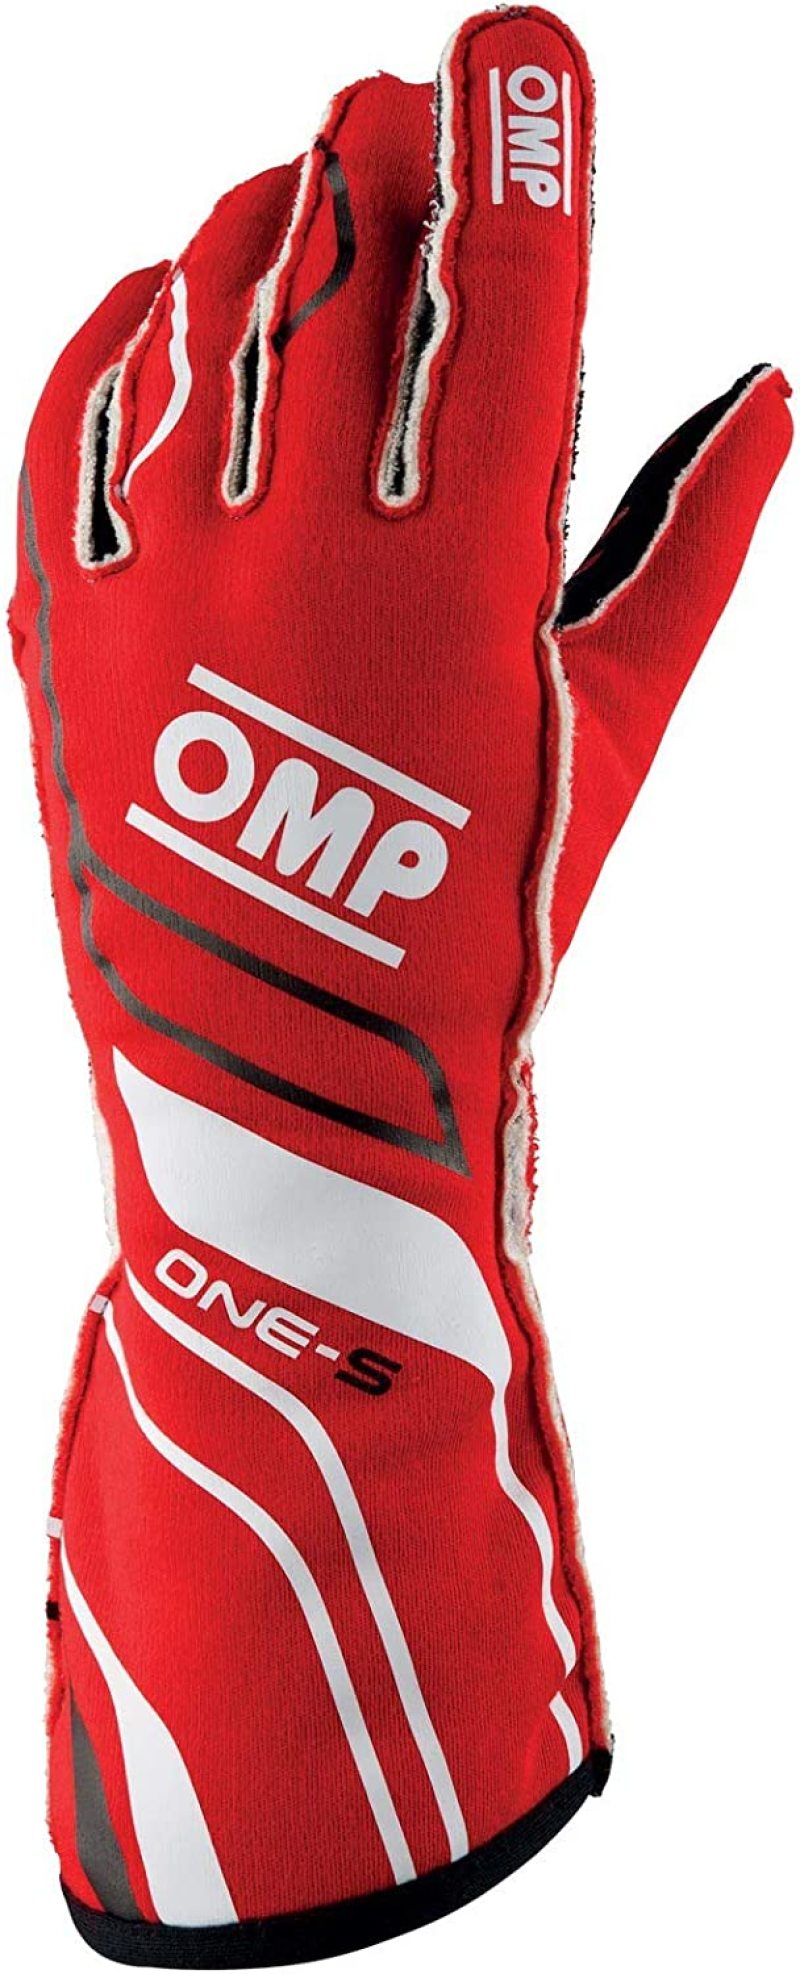 OMP One-S Gloves Red - Size XXL Fia 8556-2018 - IB0-0770-A01-061-XXL